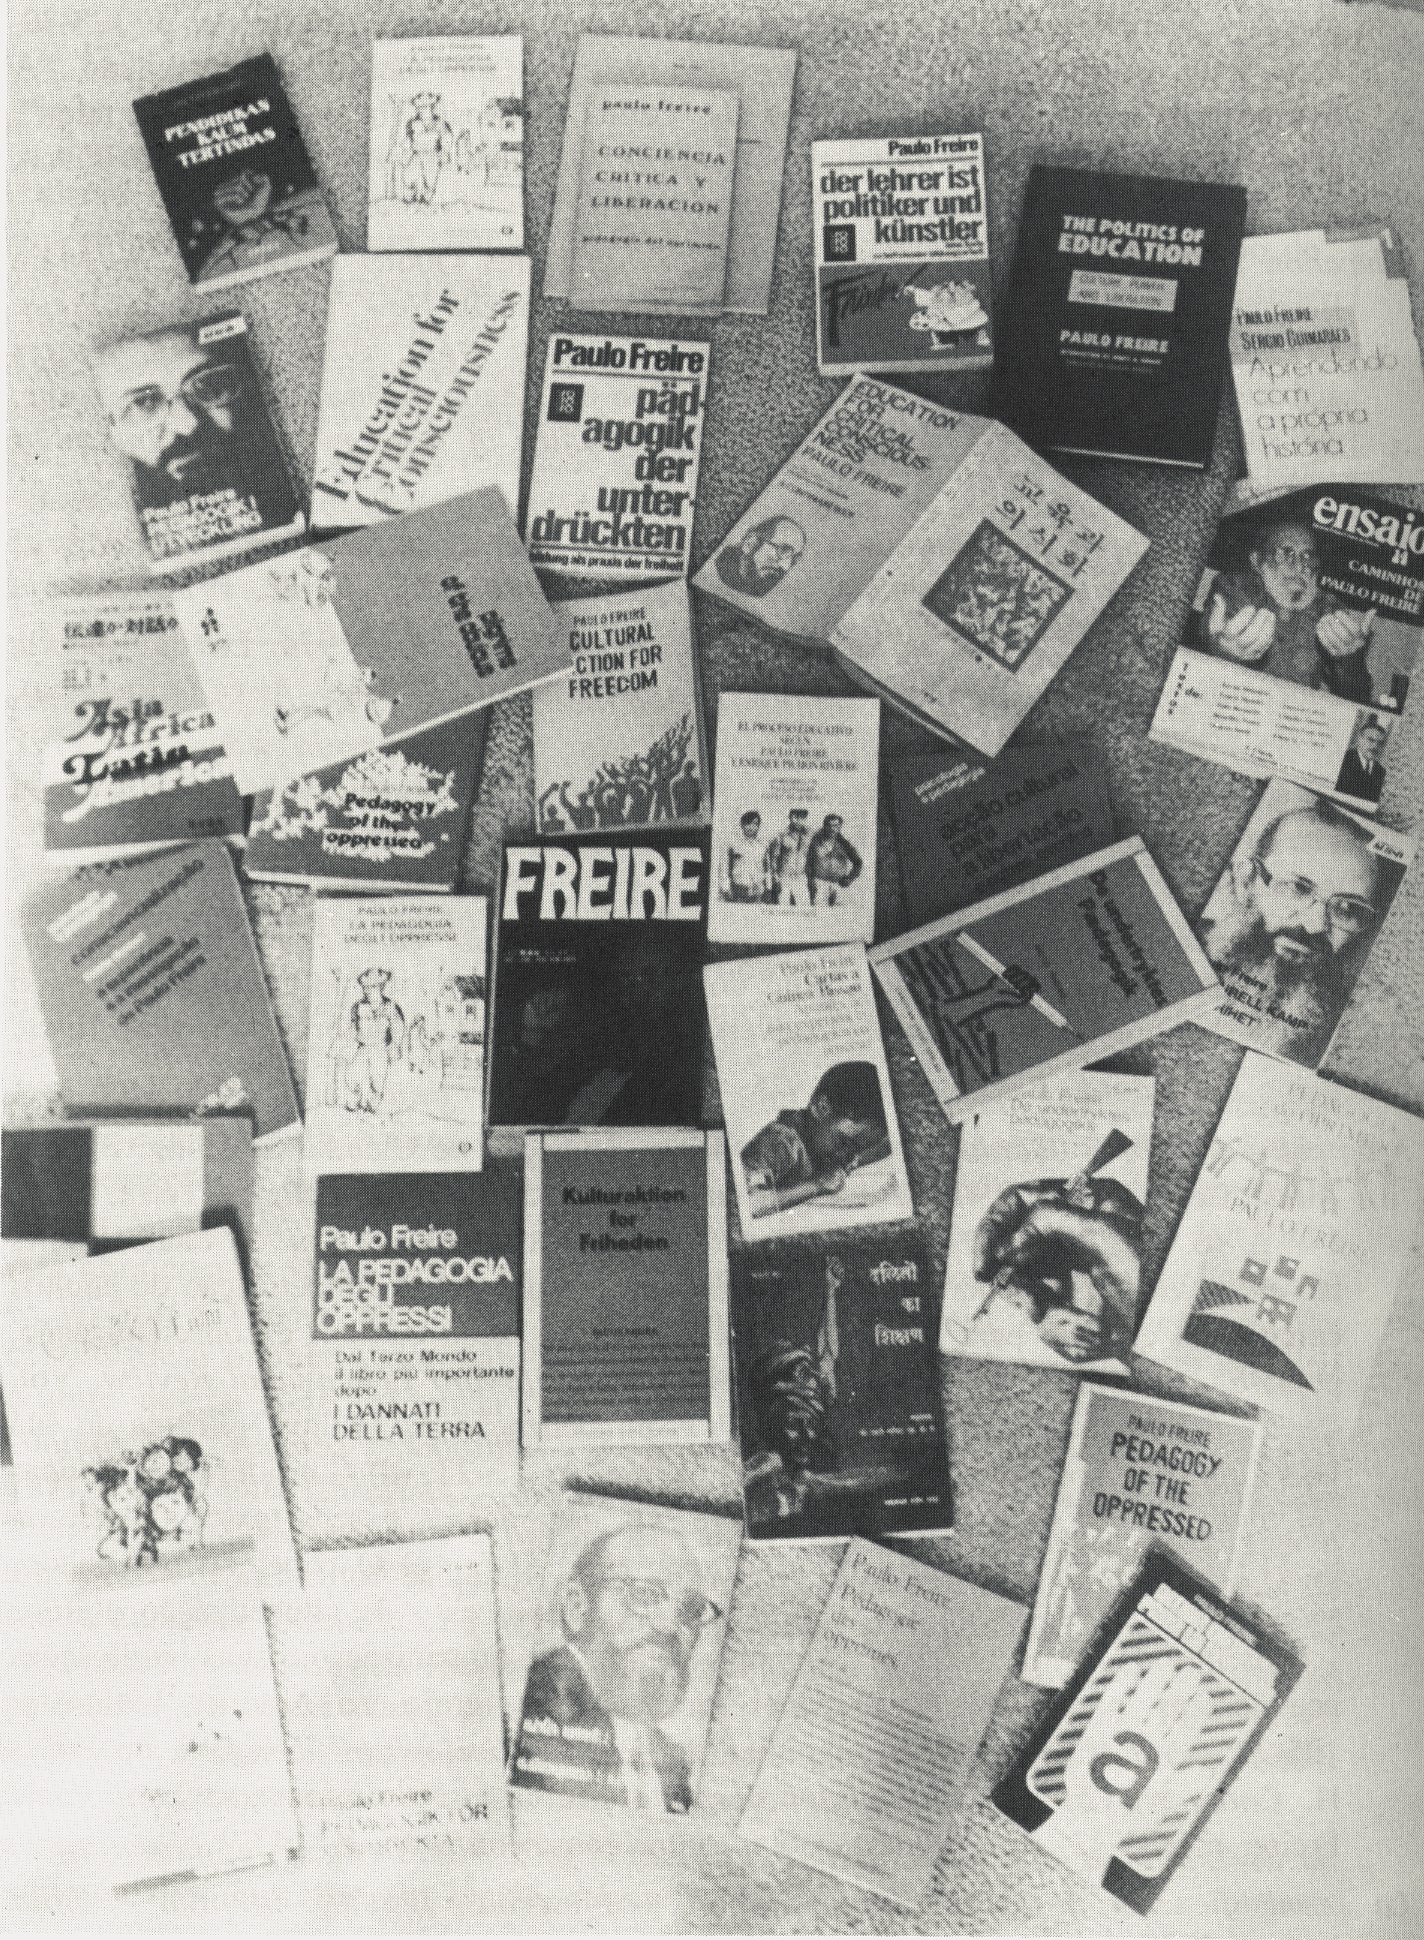 Foto: Trata-se de uma fotografia com as diversas publicações em diversos idiomas de Paulo Freire.